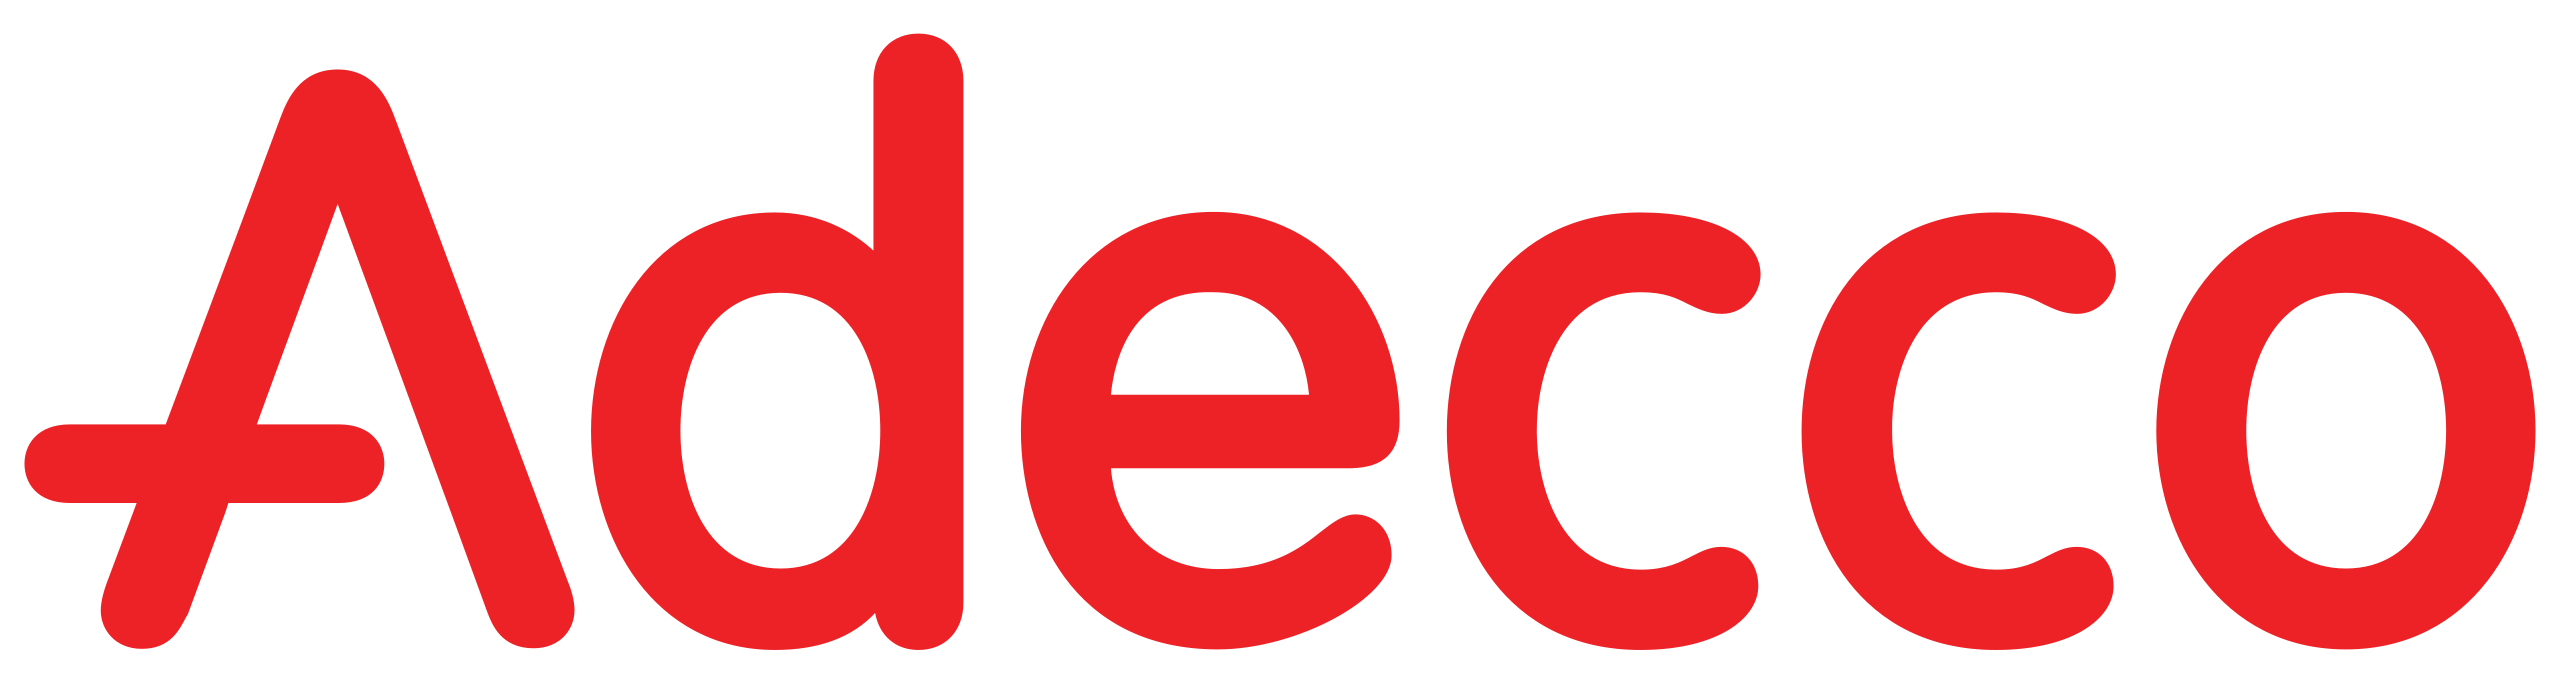 Logo Adecco